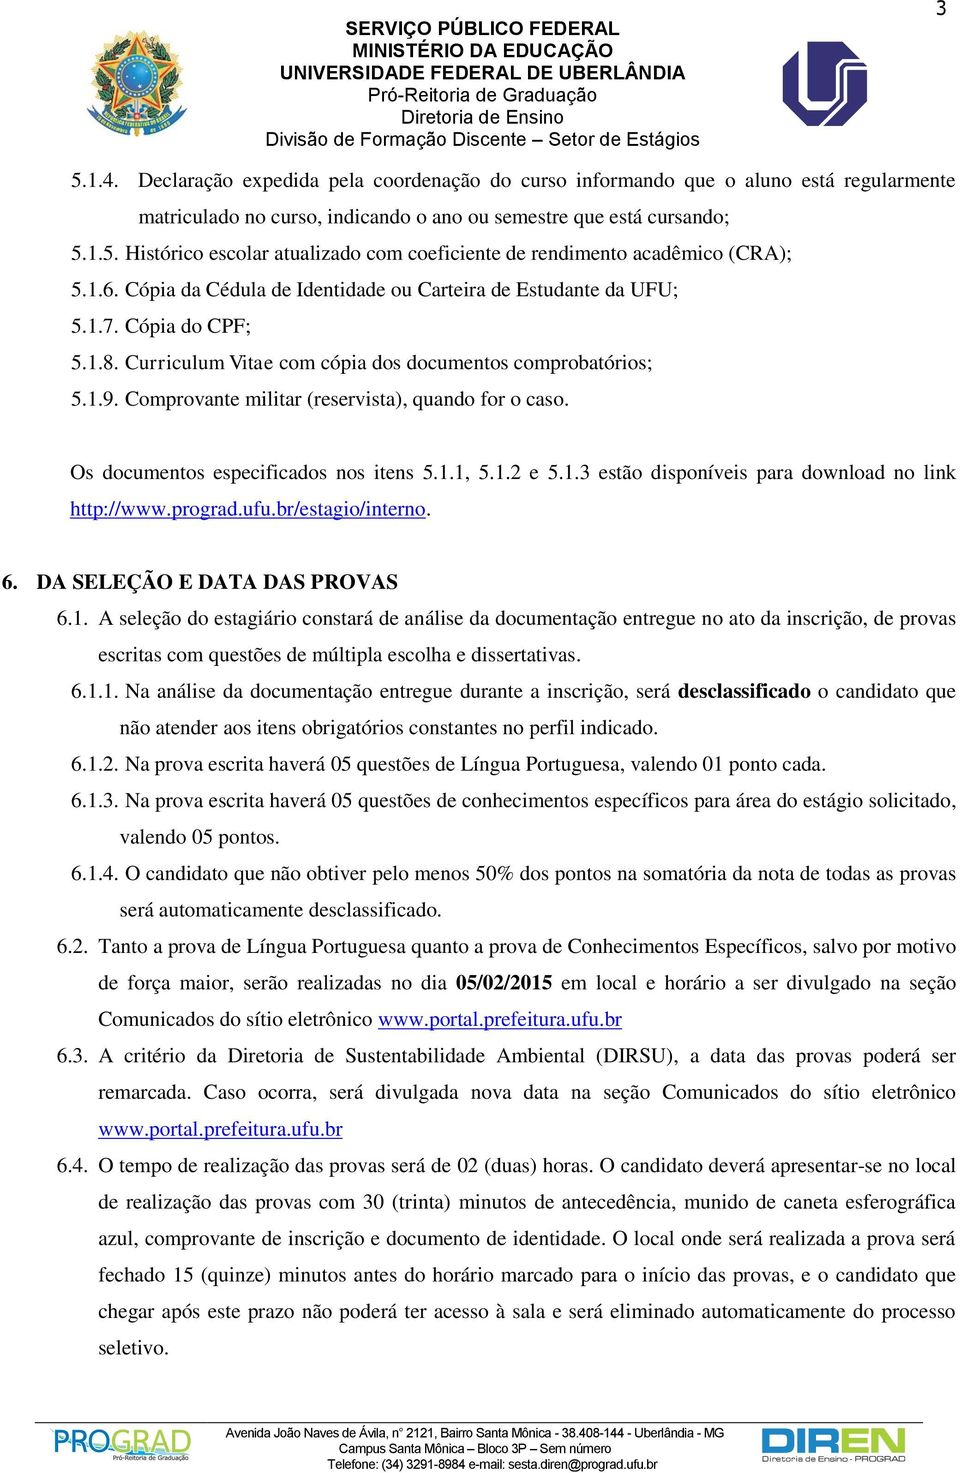 Comprovante militar (reservista), quando for o caso. Os documentos especificados nos itens 5.1.1, 5.1.2 e 5.1.3 estão disponíveis para download no link http://www.prograd.ufu.br/estagio/interno. 6.